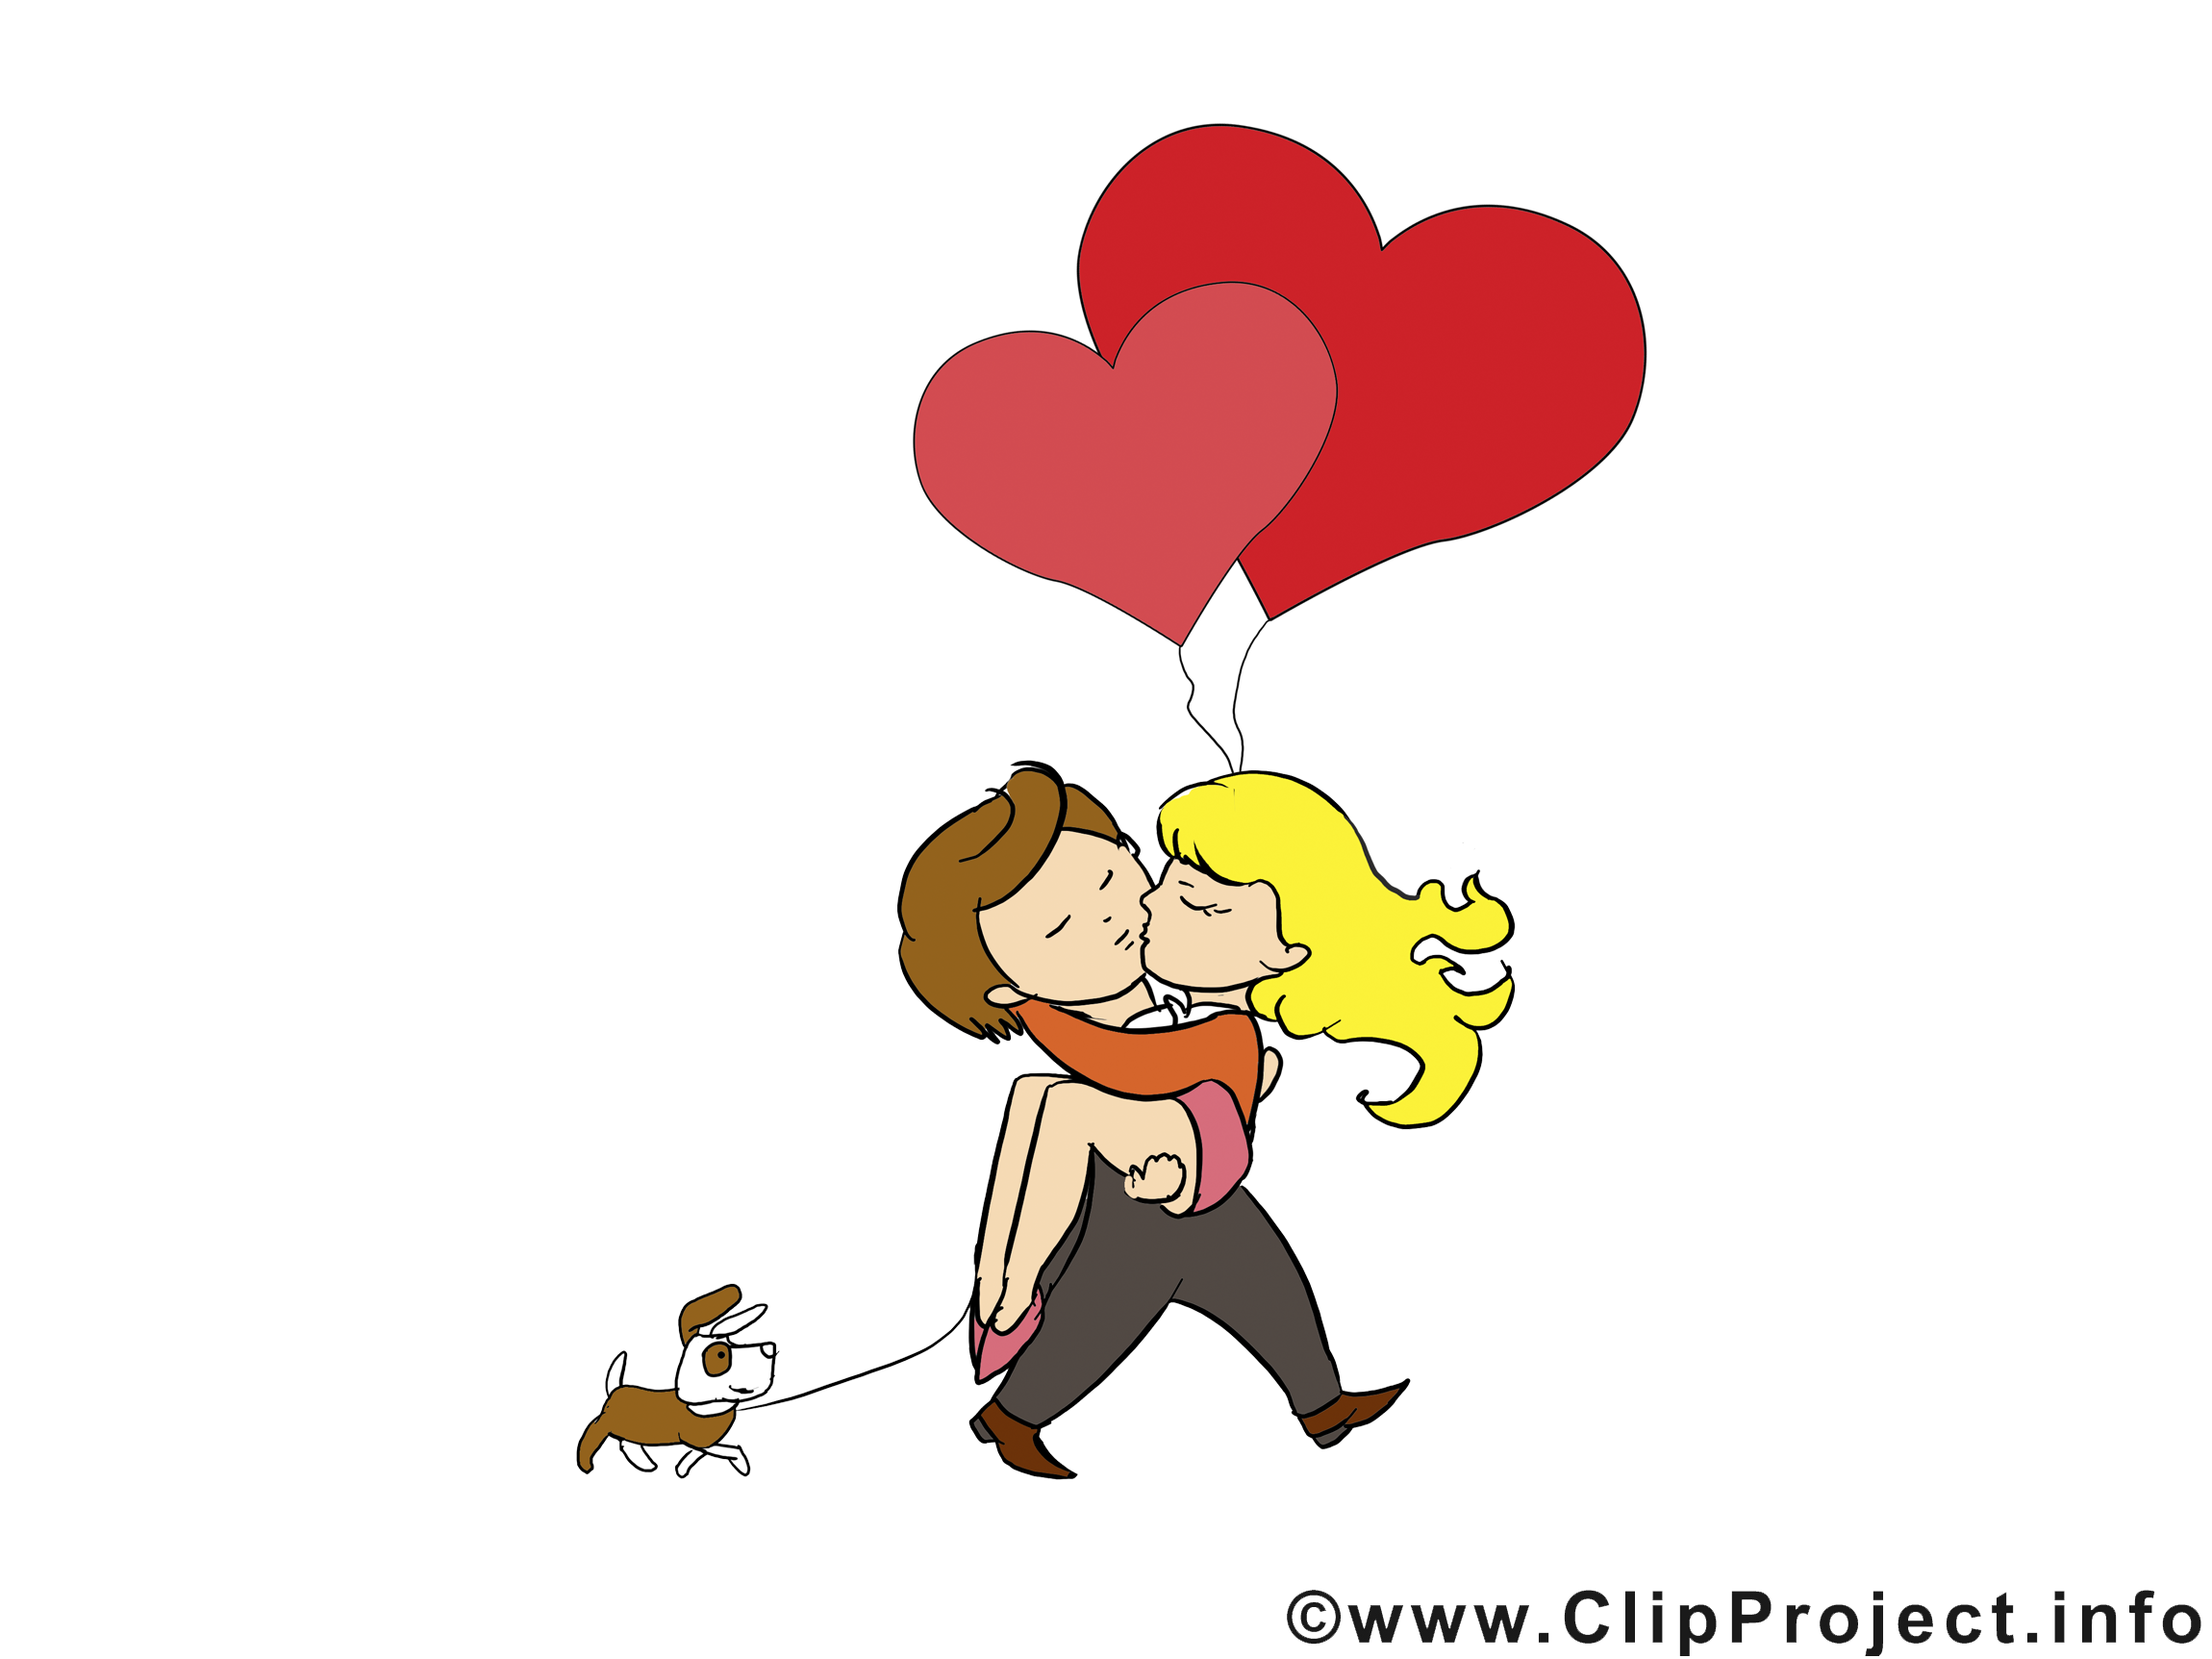 Amoureux image - Saint-Valentin illustration